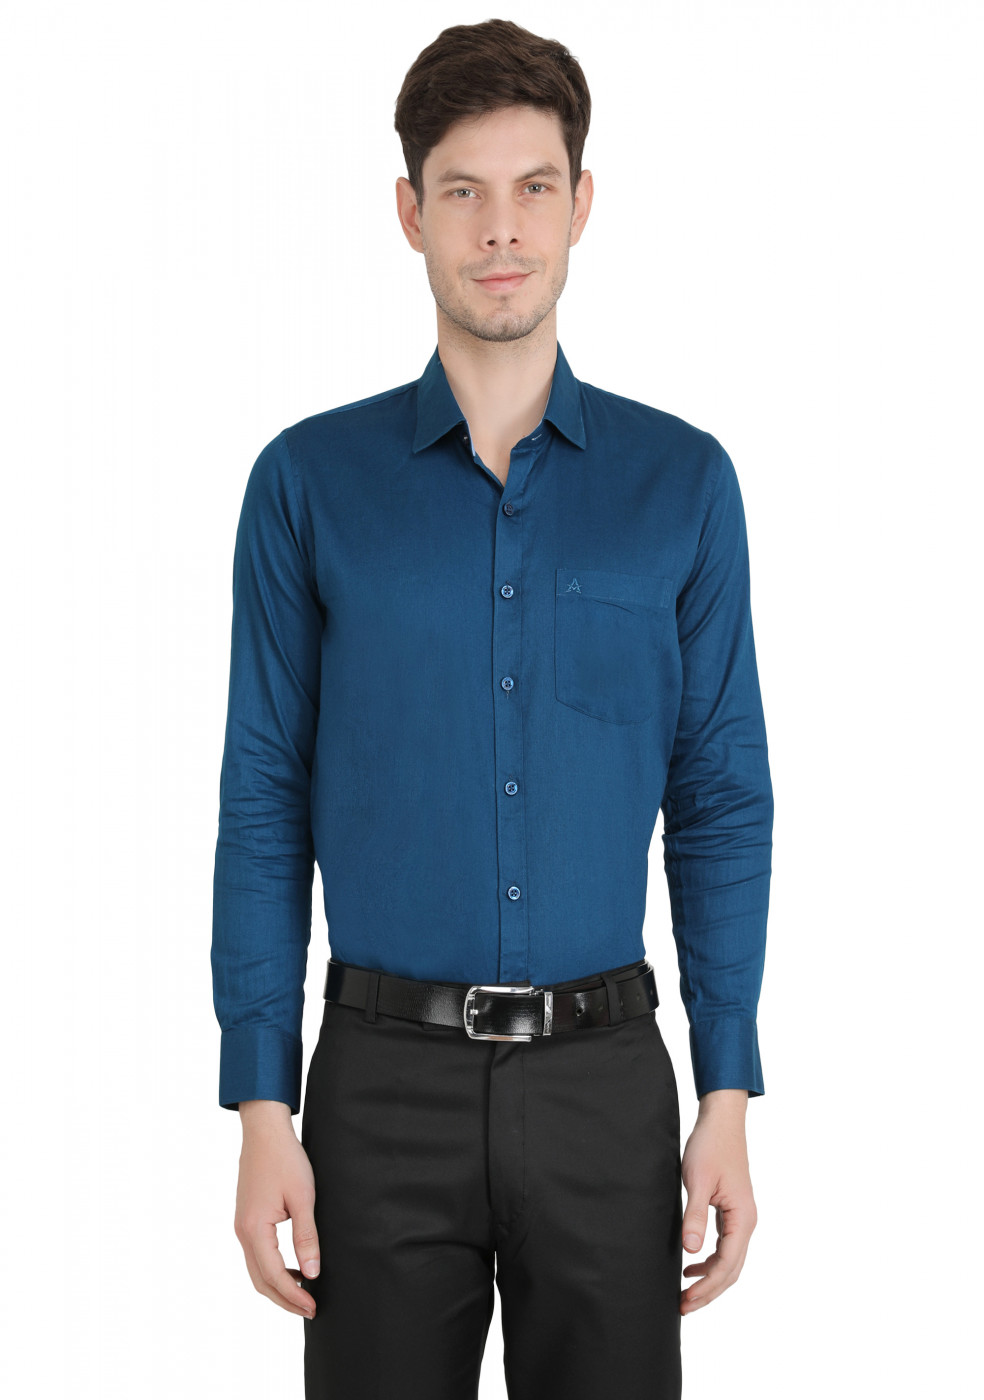 Blue Plain Formal Cotton Shirt For Men